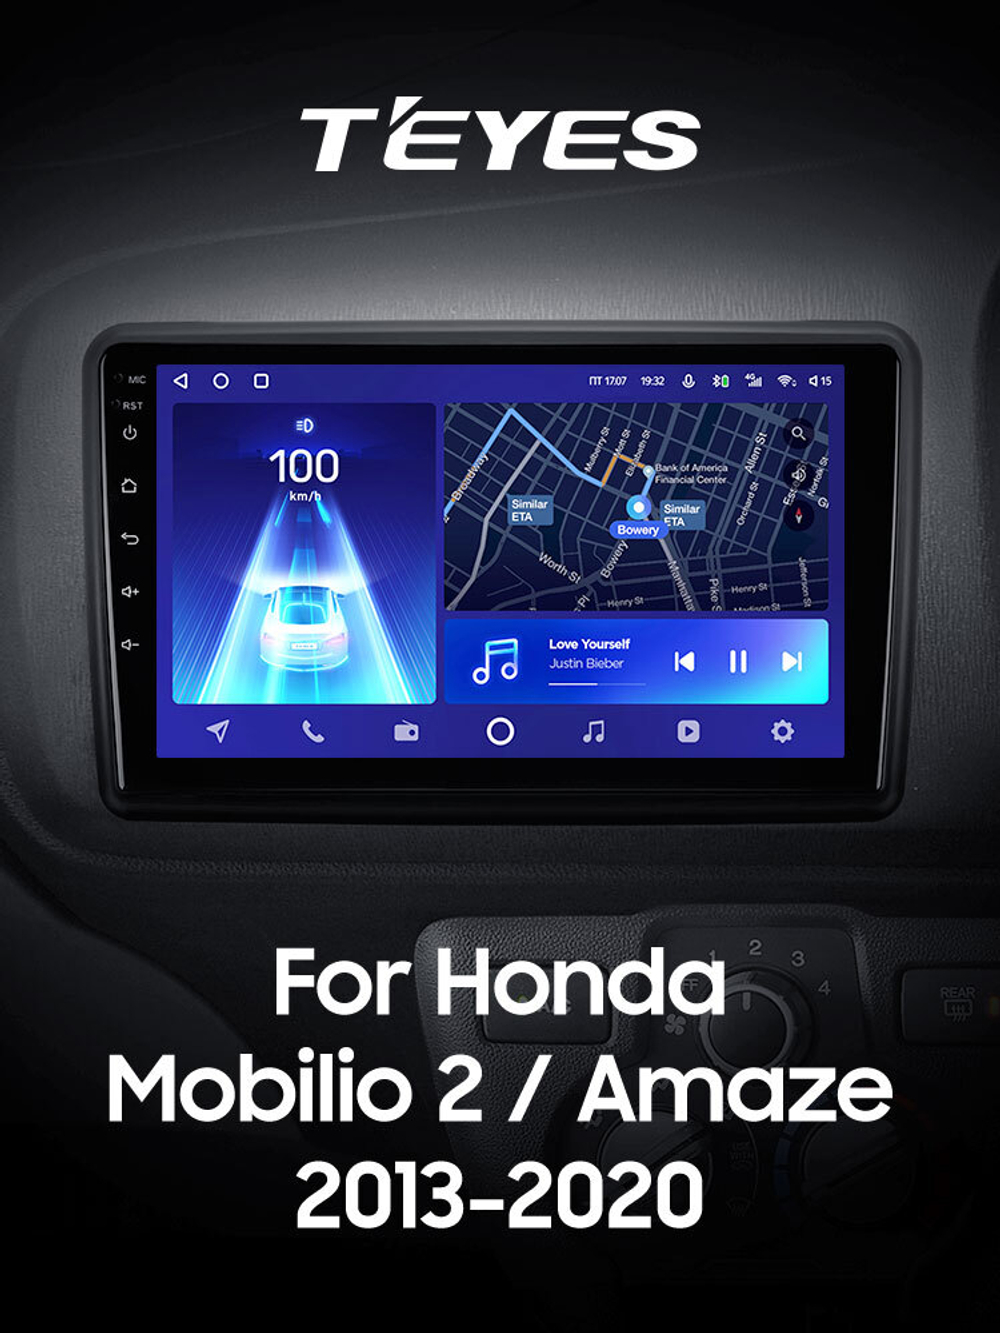 Teyes CC2 Plus 9" для Honda Mobilio 2, Amaze 2013-2020